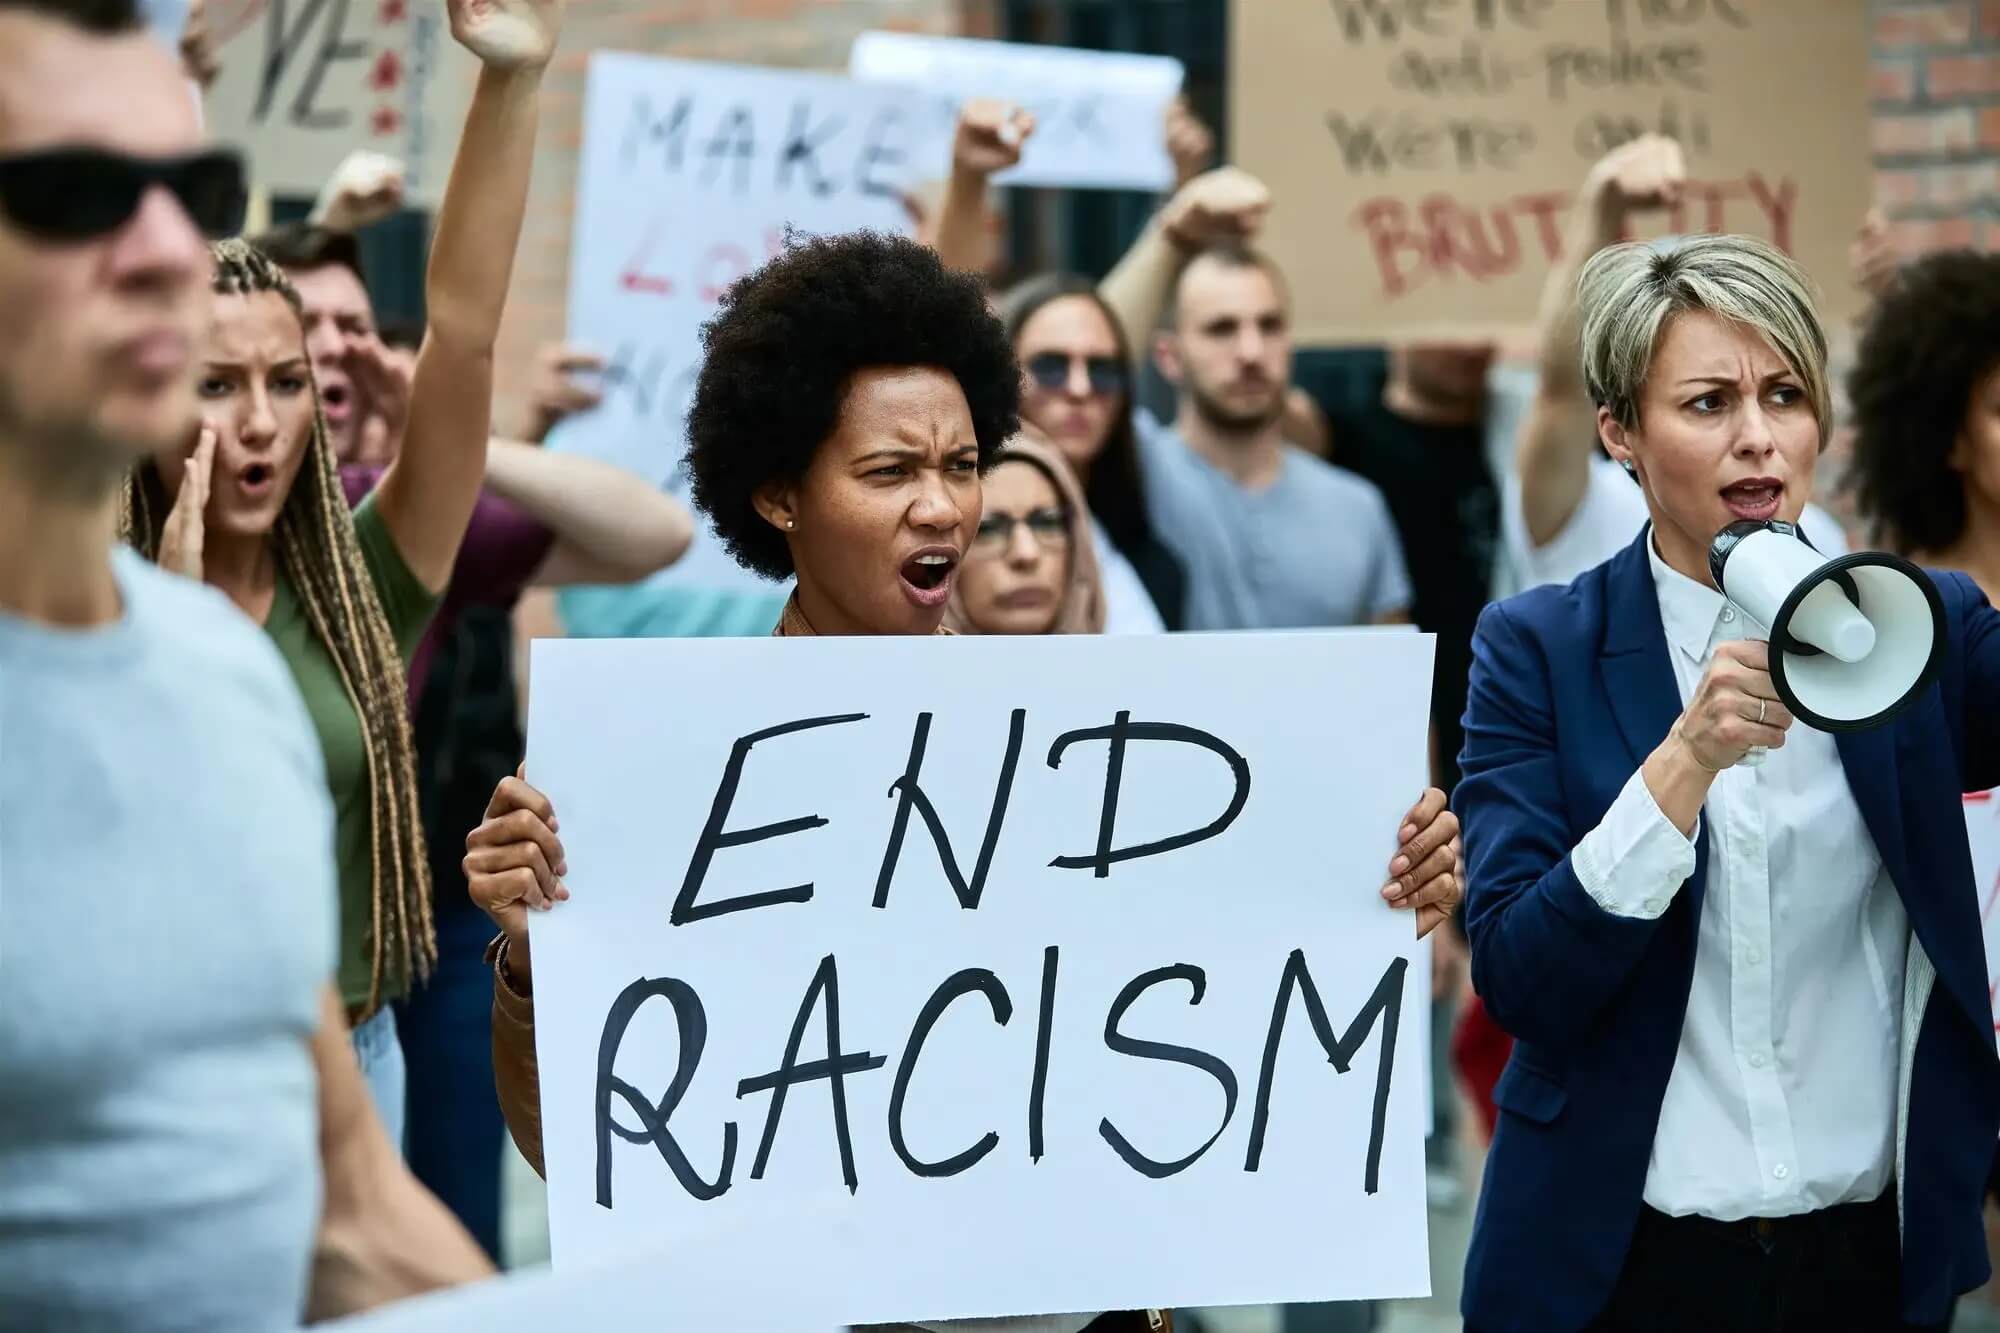 Расизм, что это такое Какова ситуация в Германии и как ее изменить